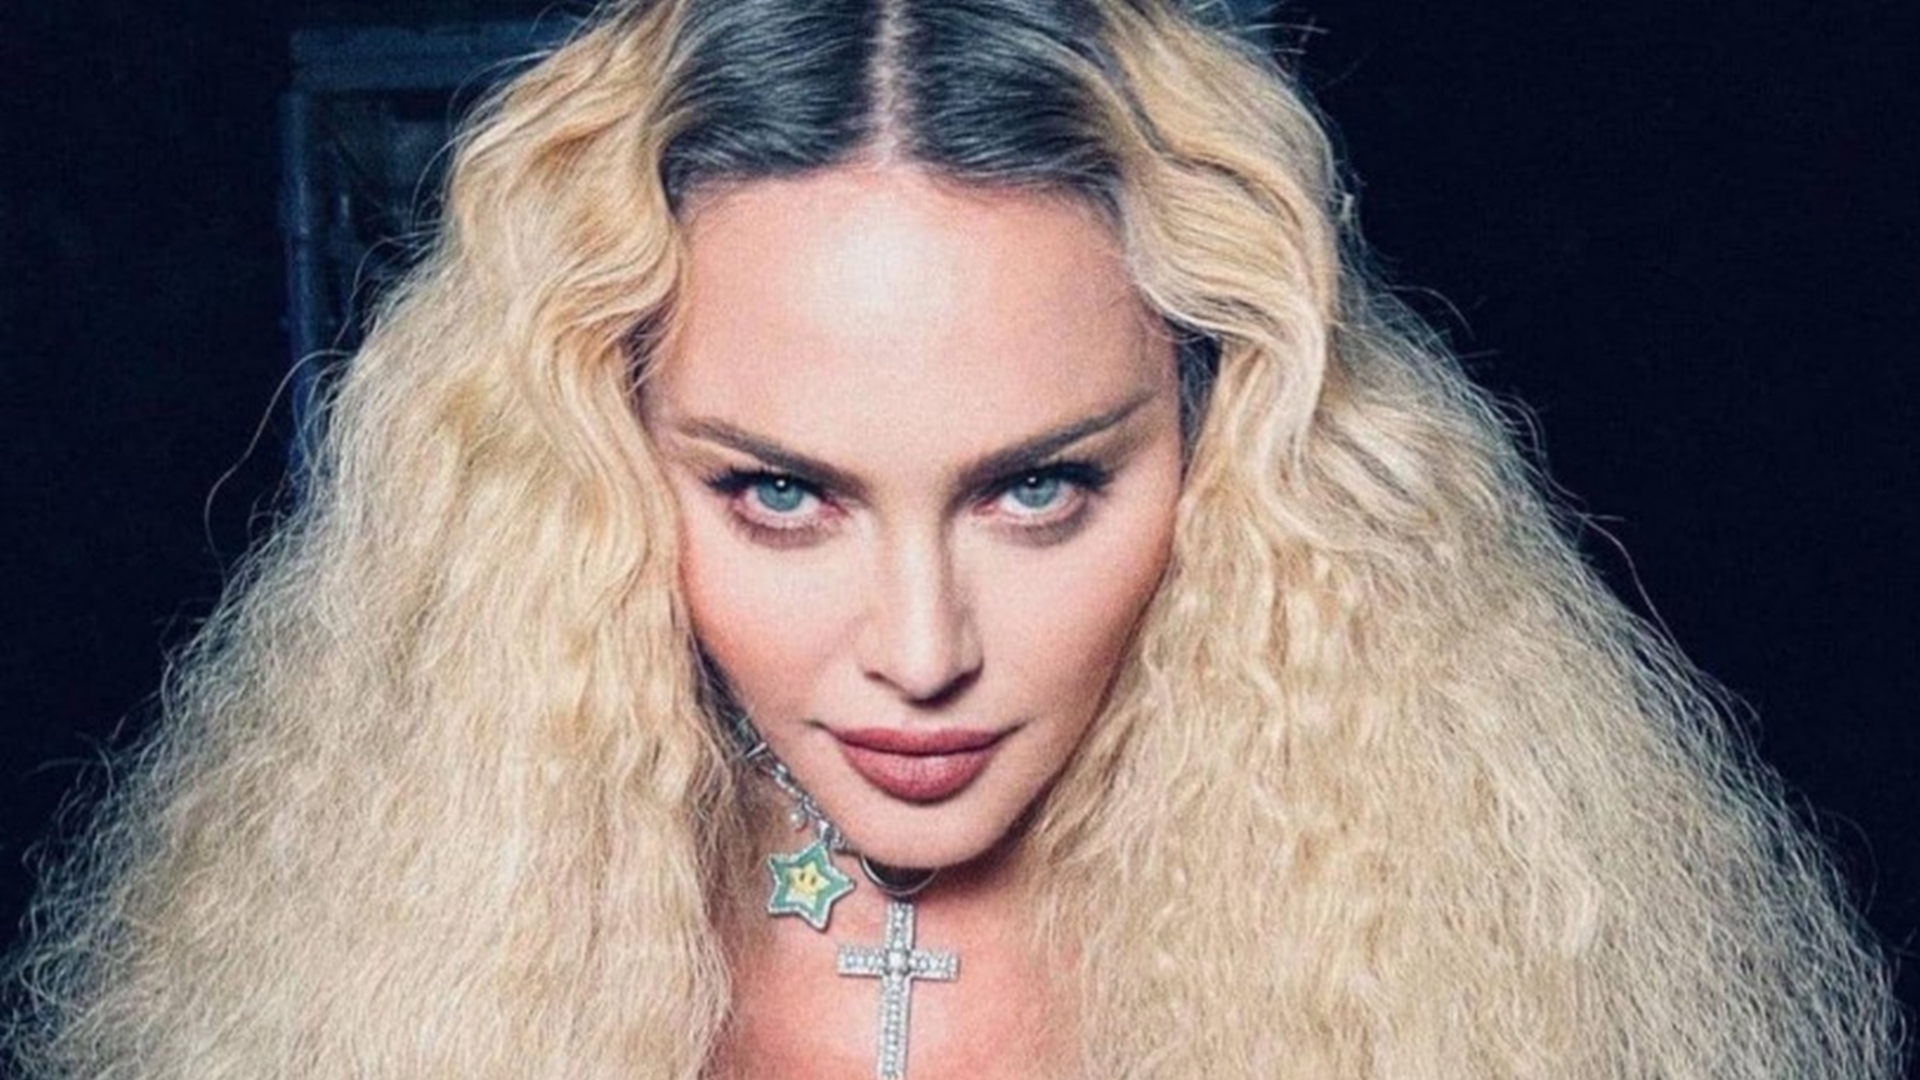 Madonna começa turnê após problema de saúde: 'Esqueci 5 dias